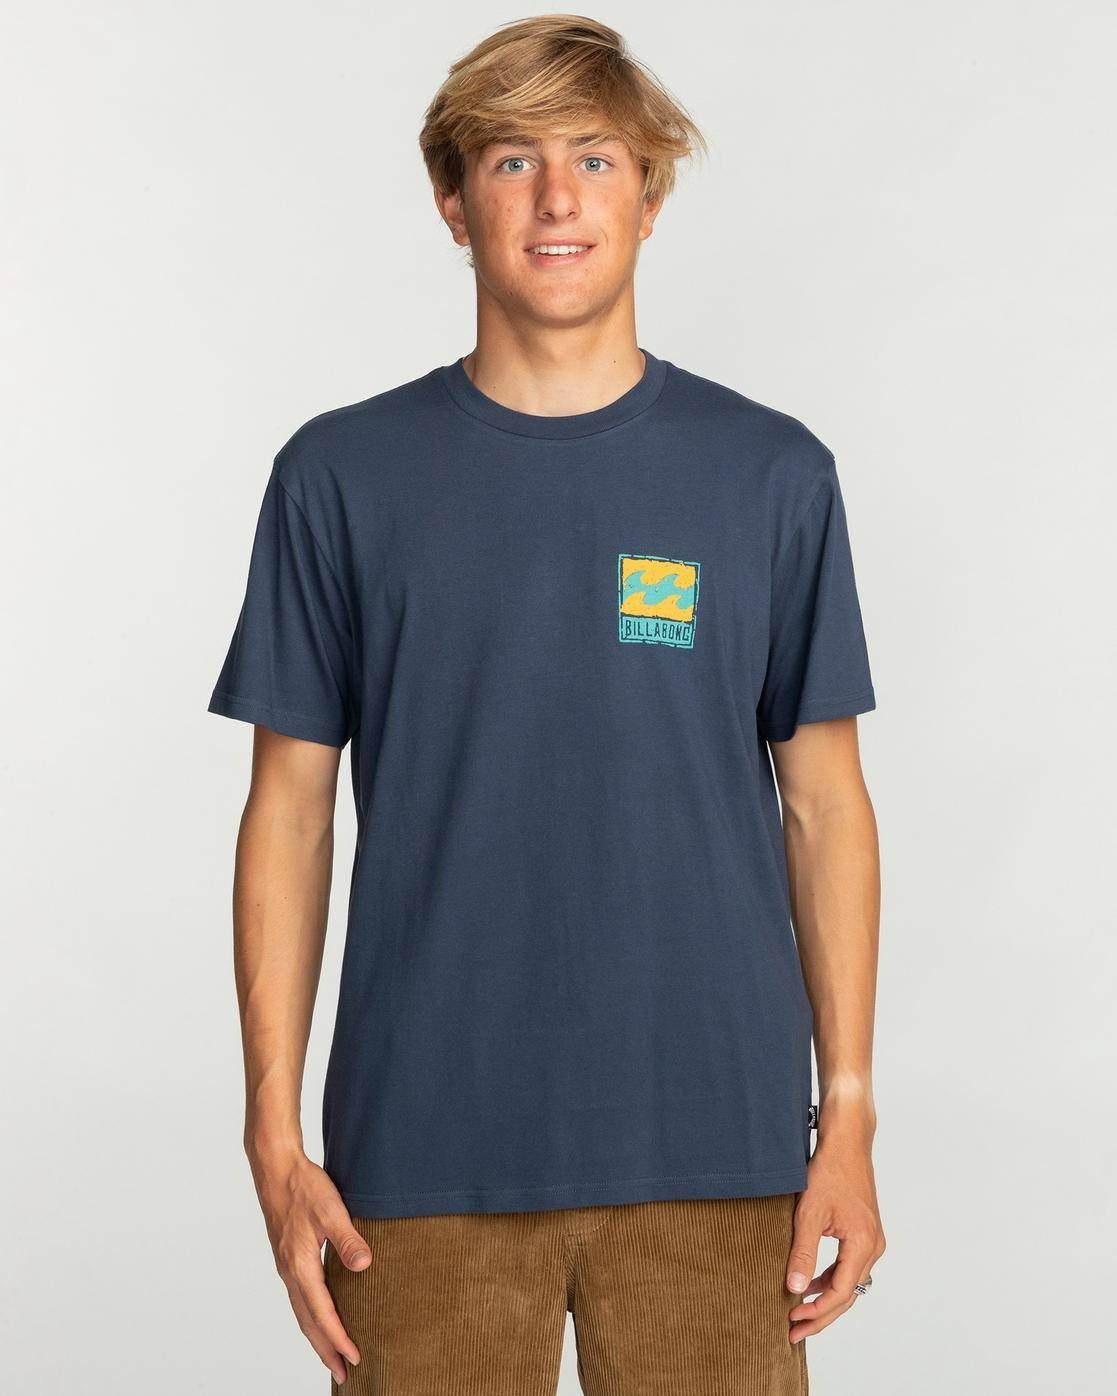 Print-Shirt Stamp T-Shirt Männer - für Billabong